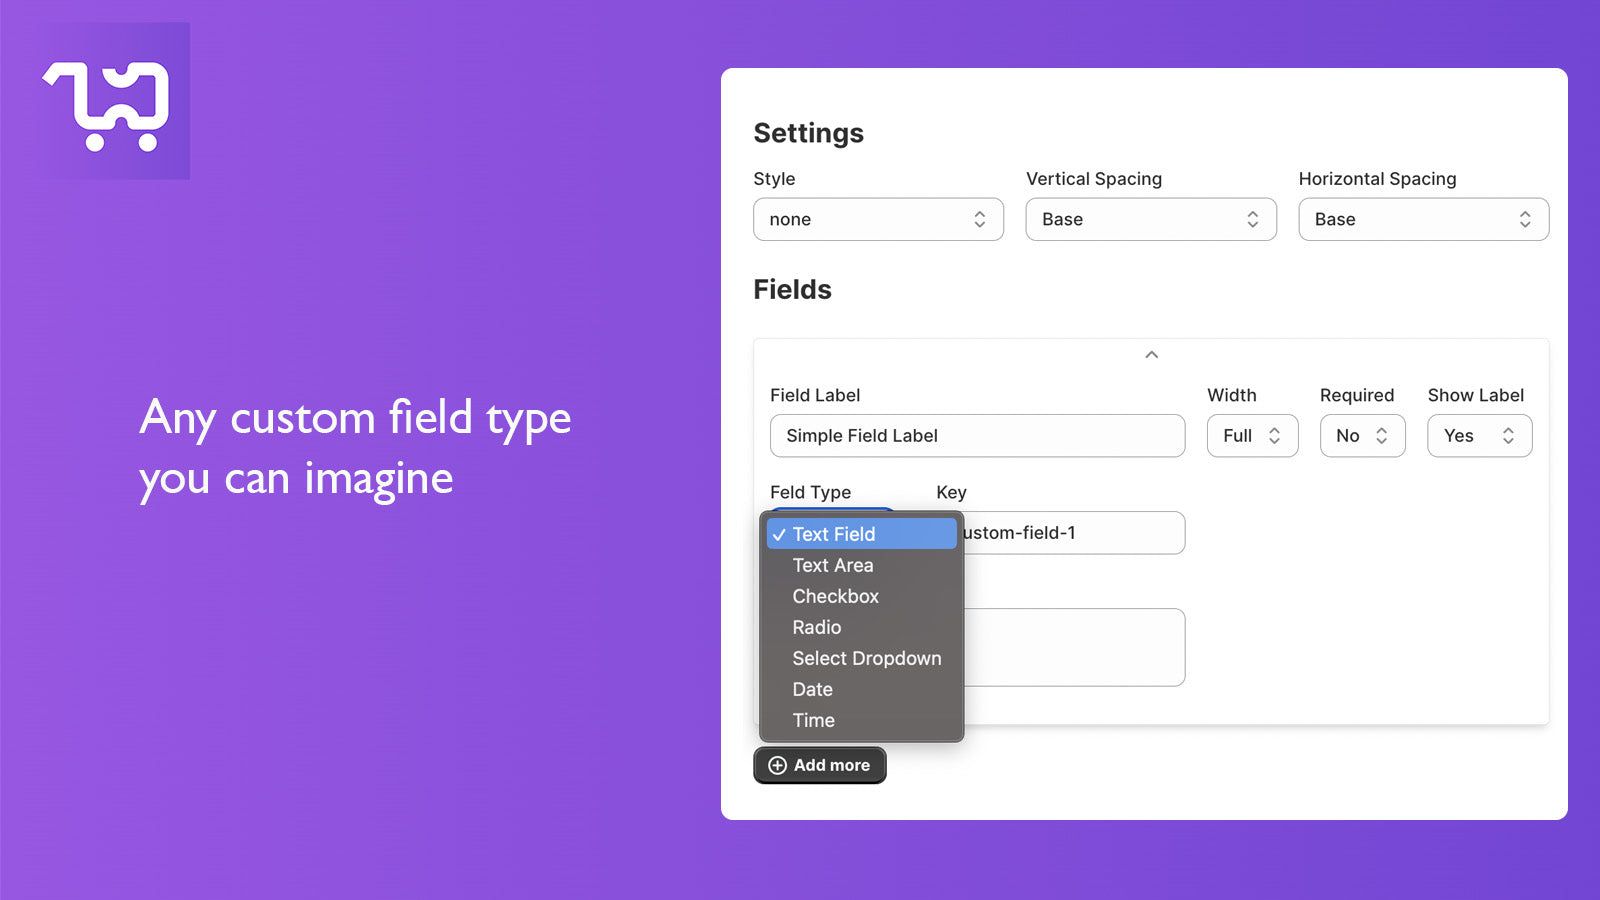 Any custom field type you can imagine